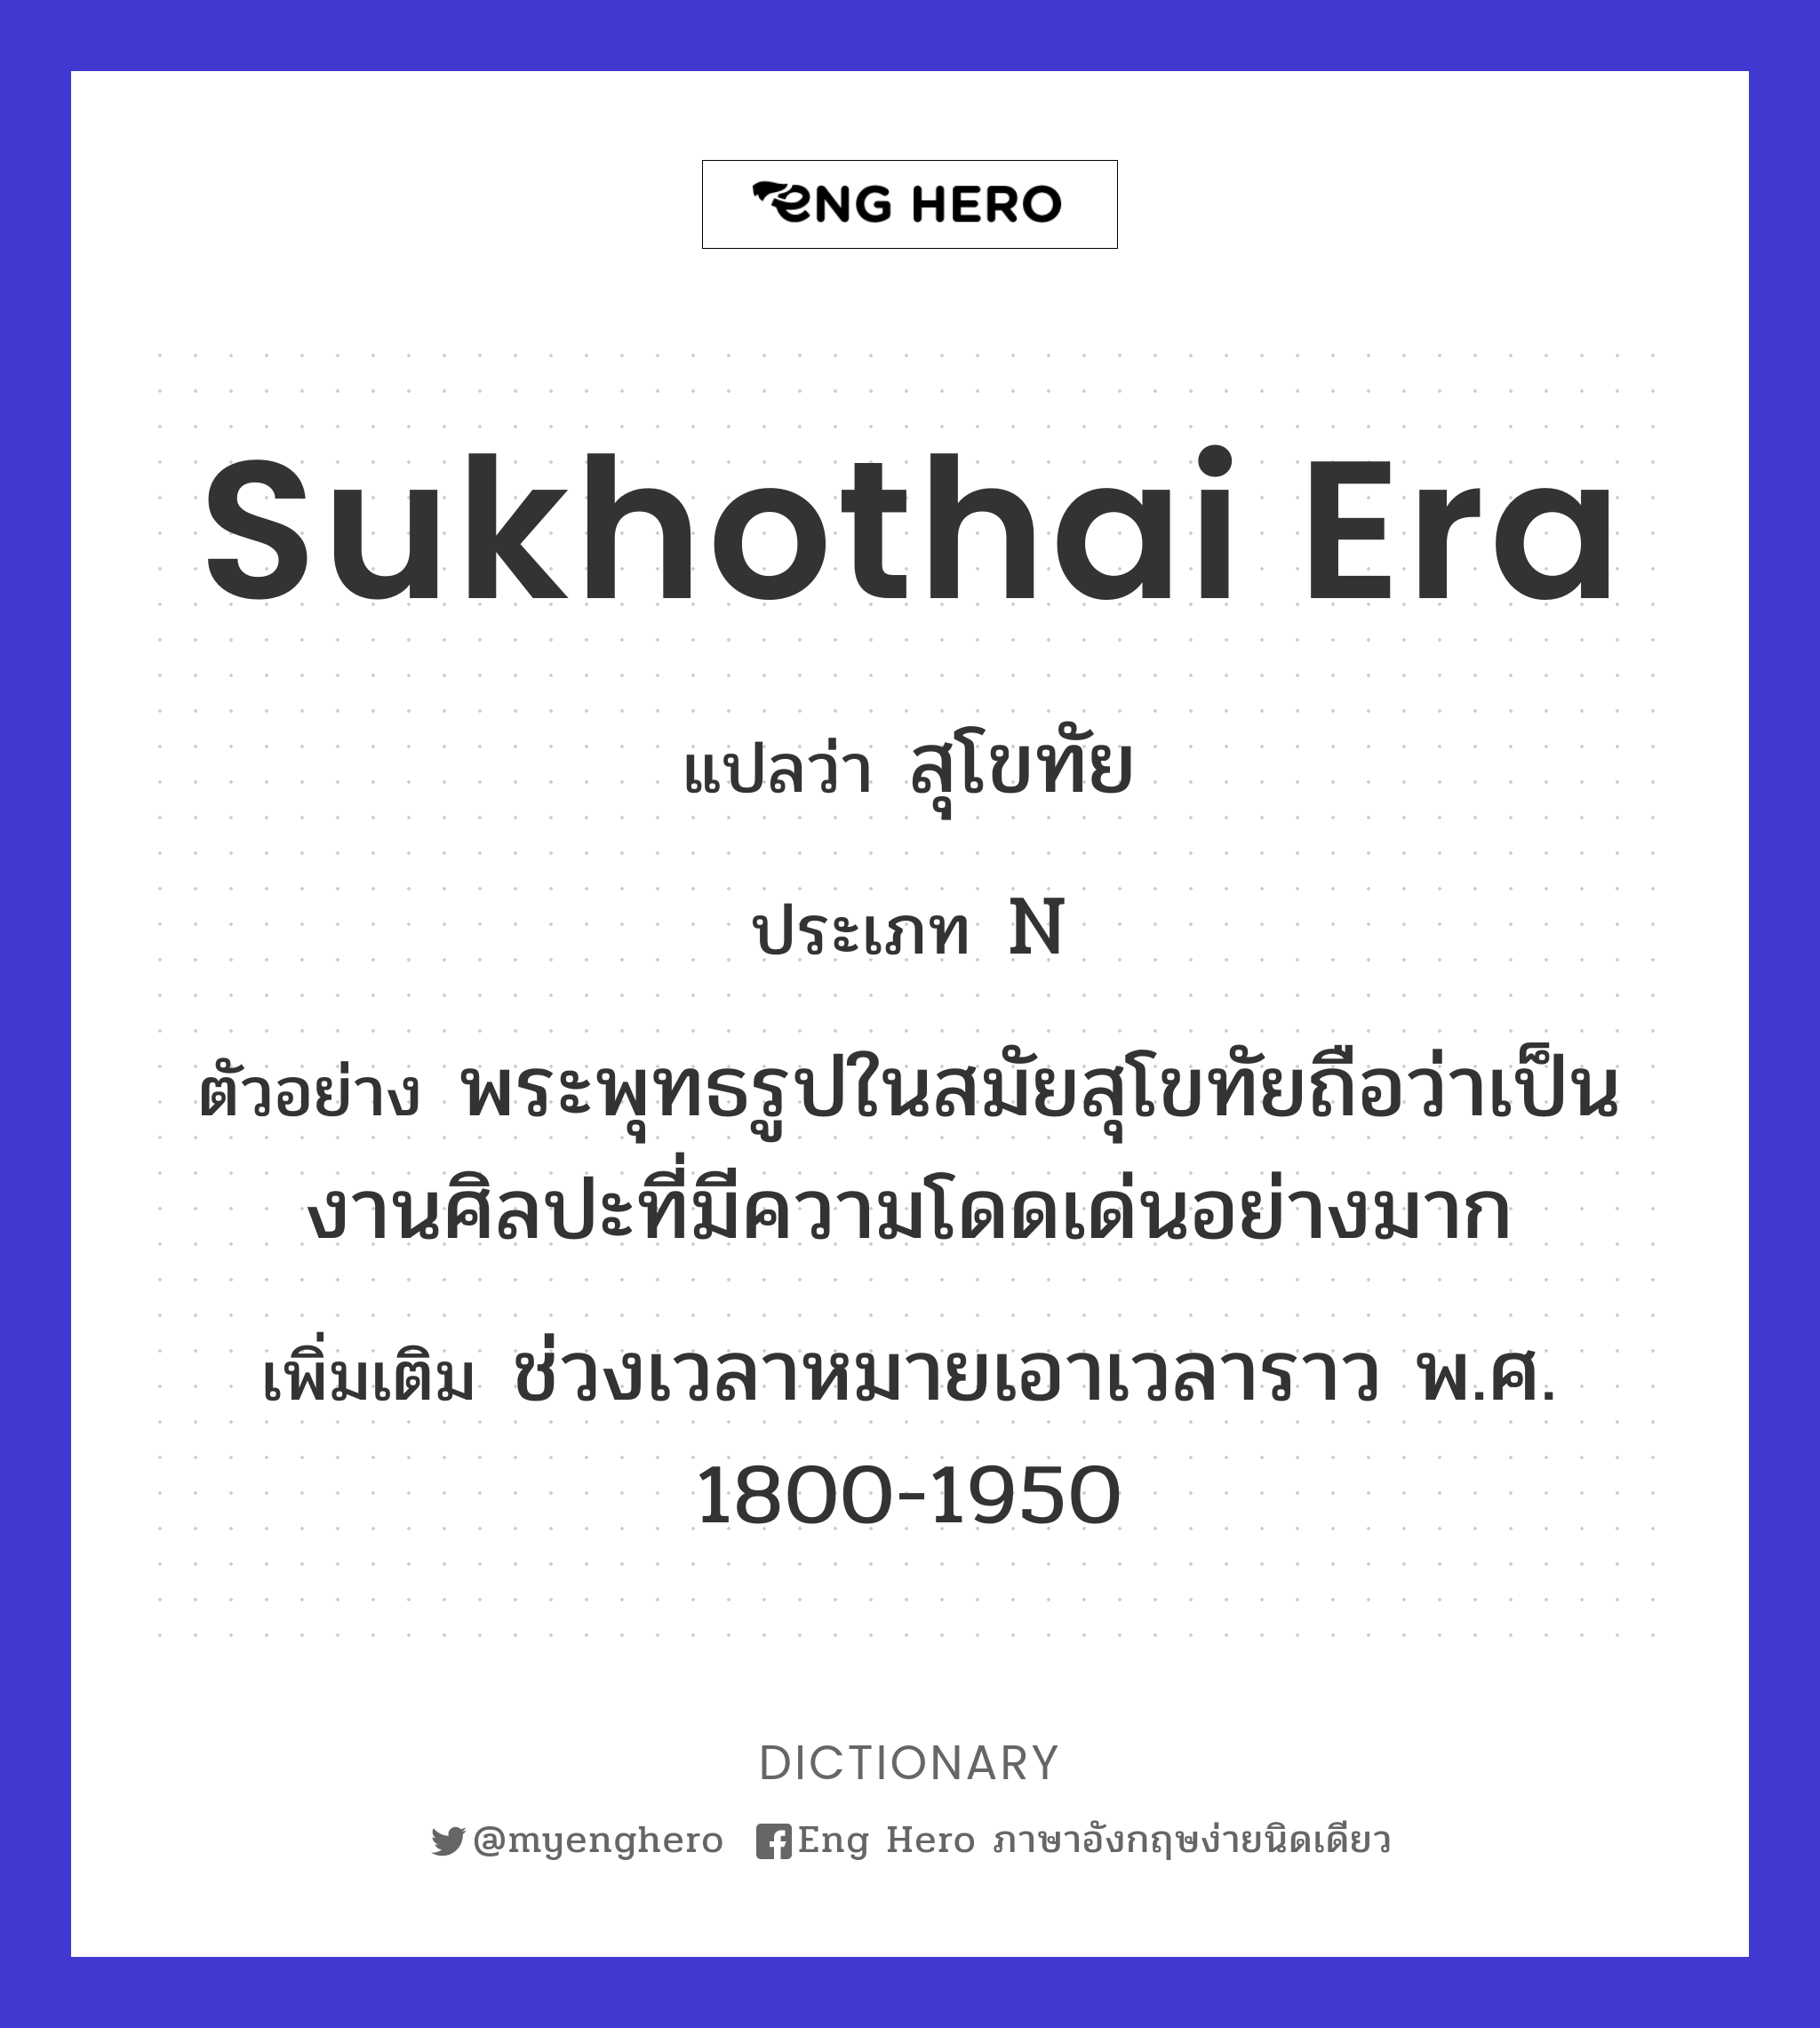 Sukhothai era